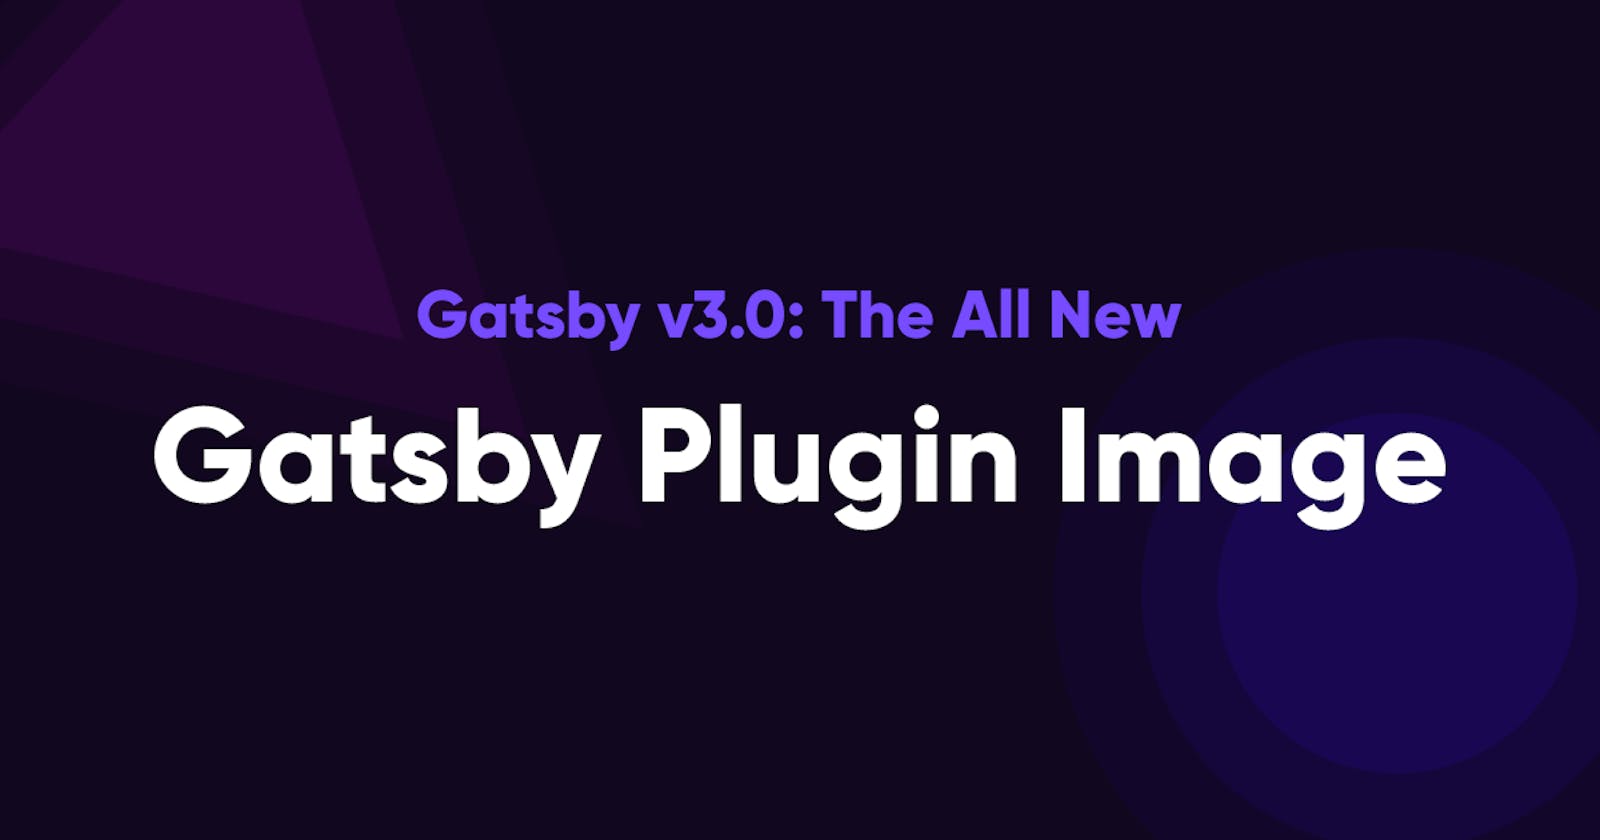 GatsbyConf 2021 - Gatsby v3.0 And The New Gatsby Plugin Image